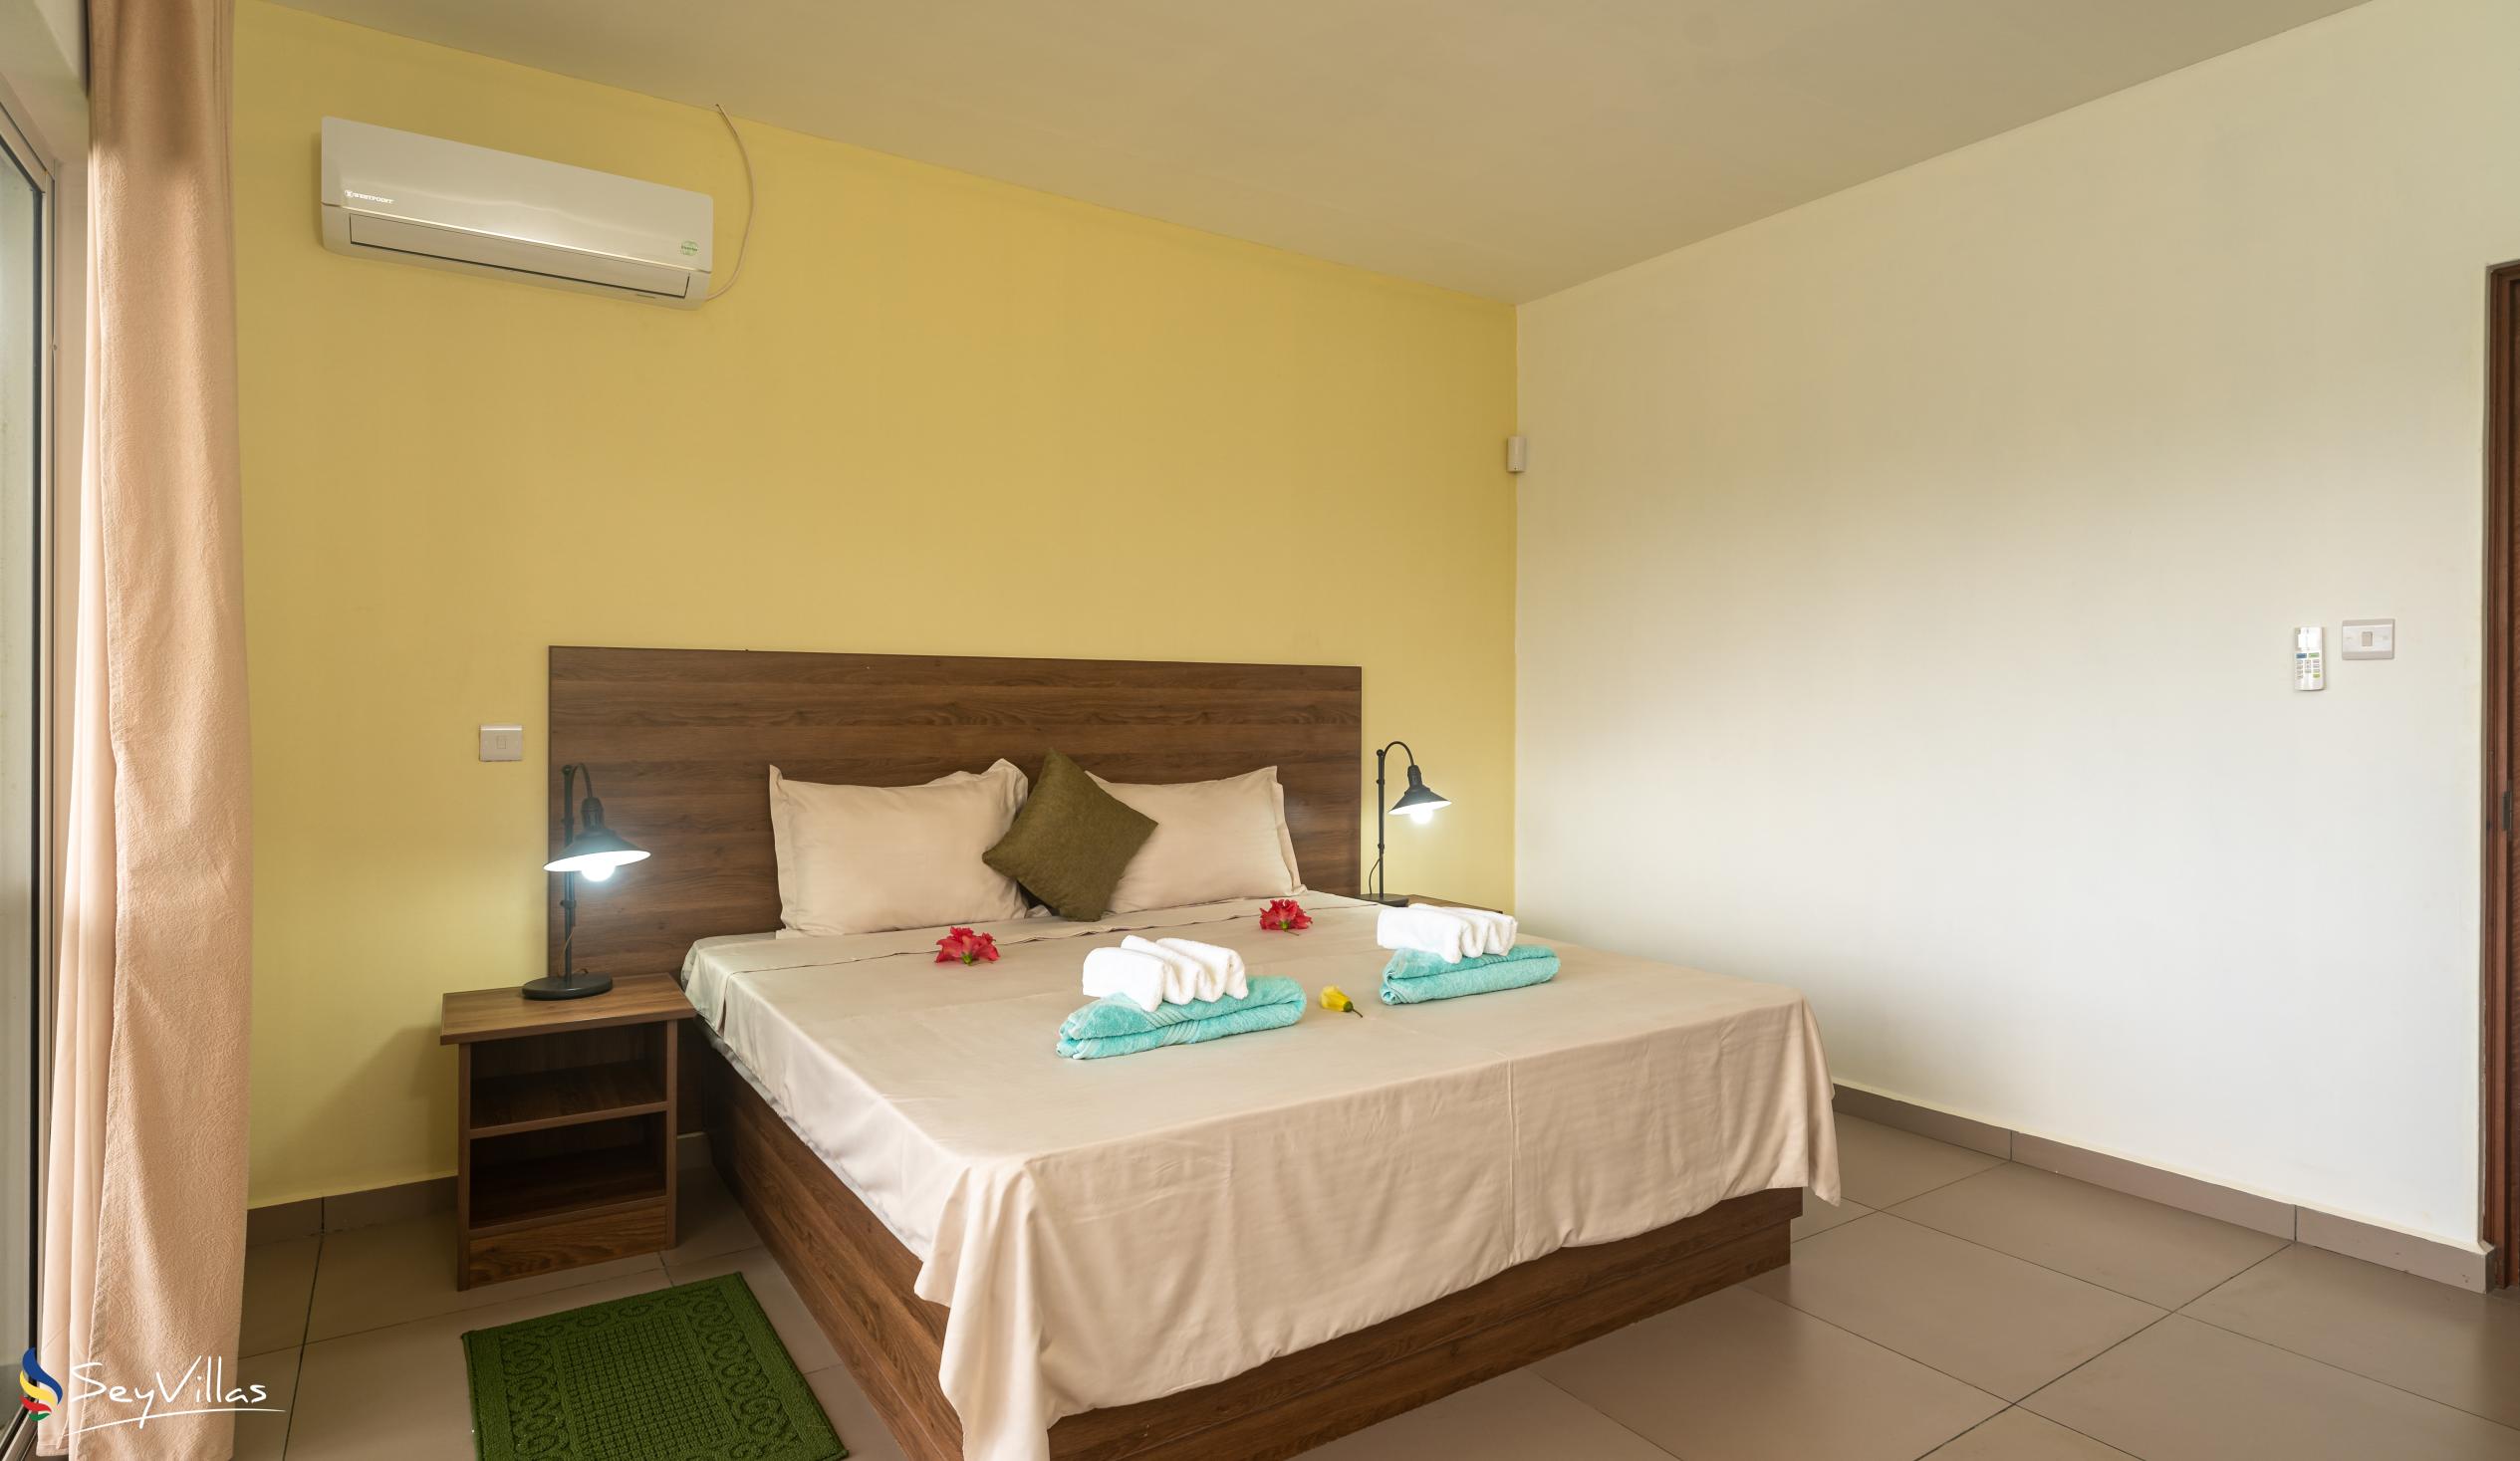 Foto 43: Maison Dora - Villa mit 2 Schlafzimmern - Mahé (Seychellen)